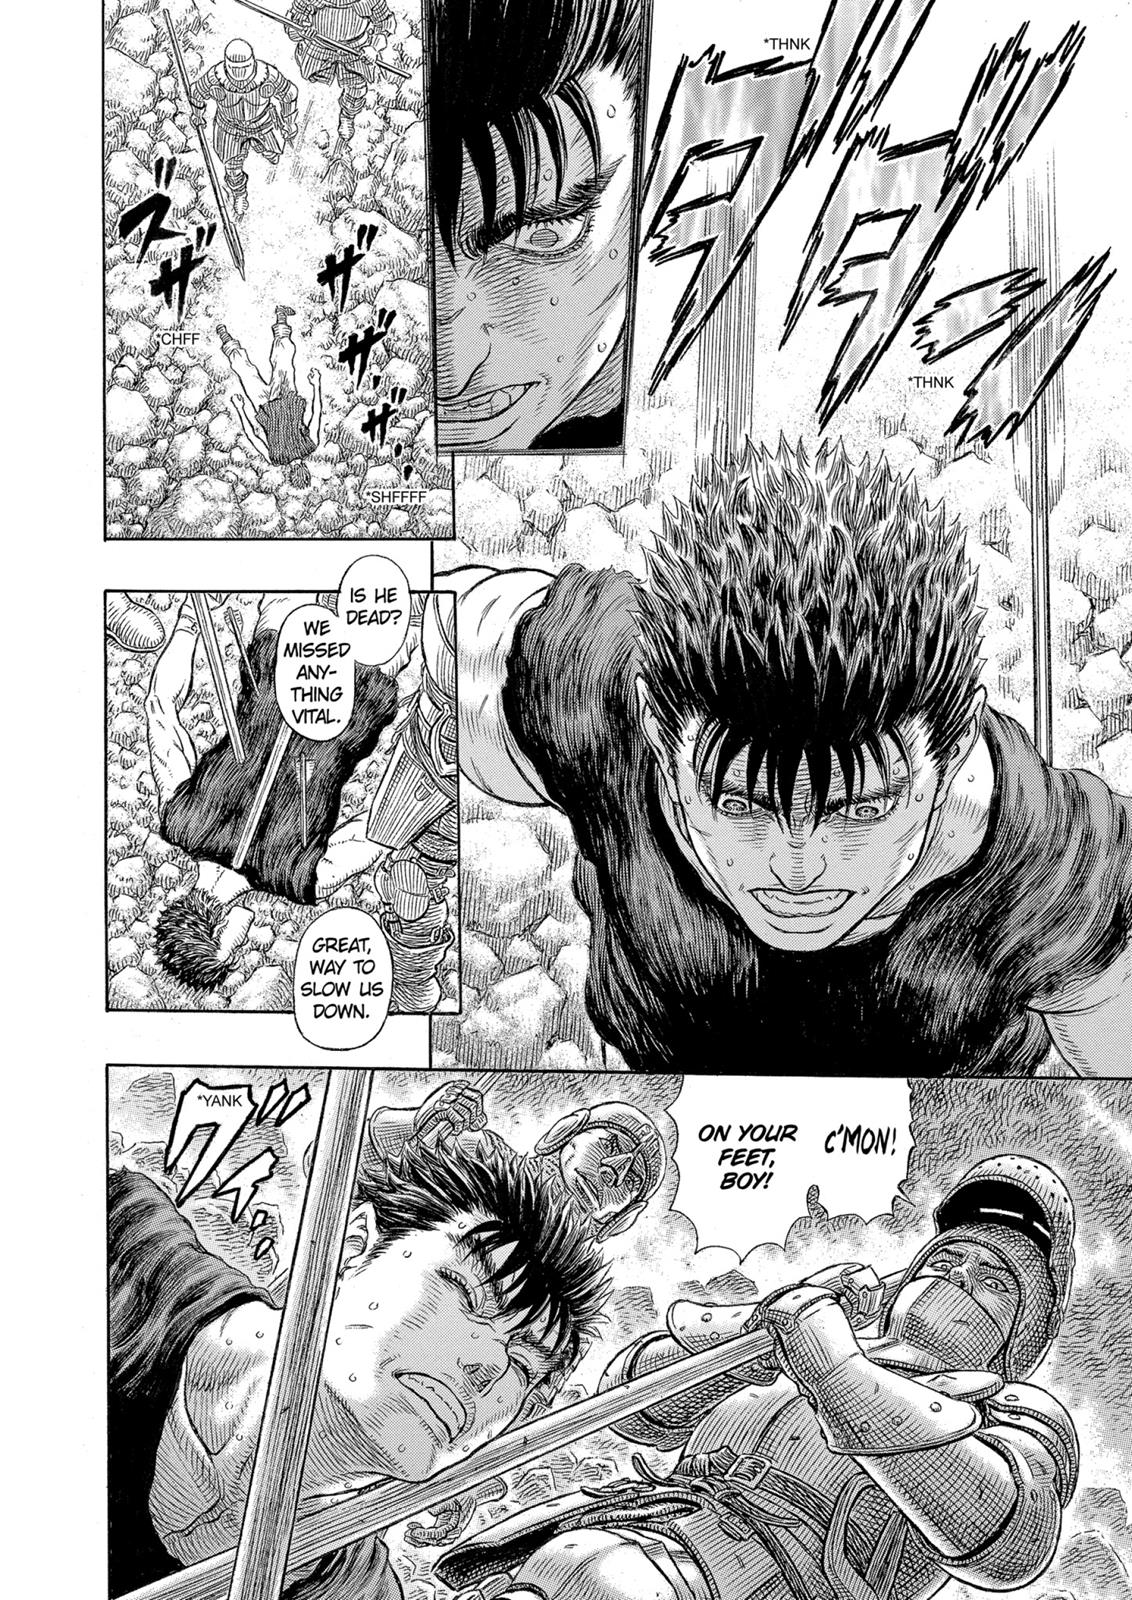 Berserk Manga Chapter 329 image 13